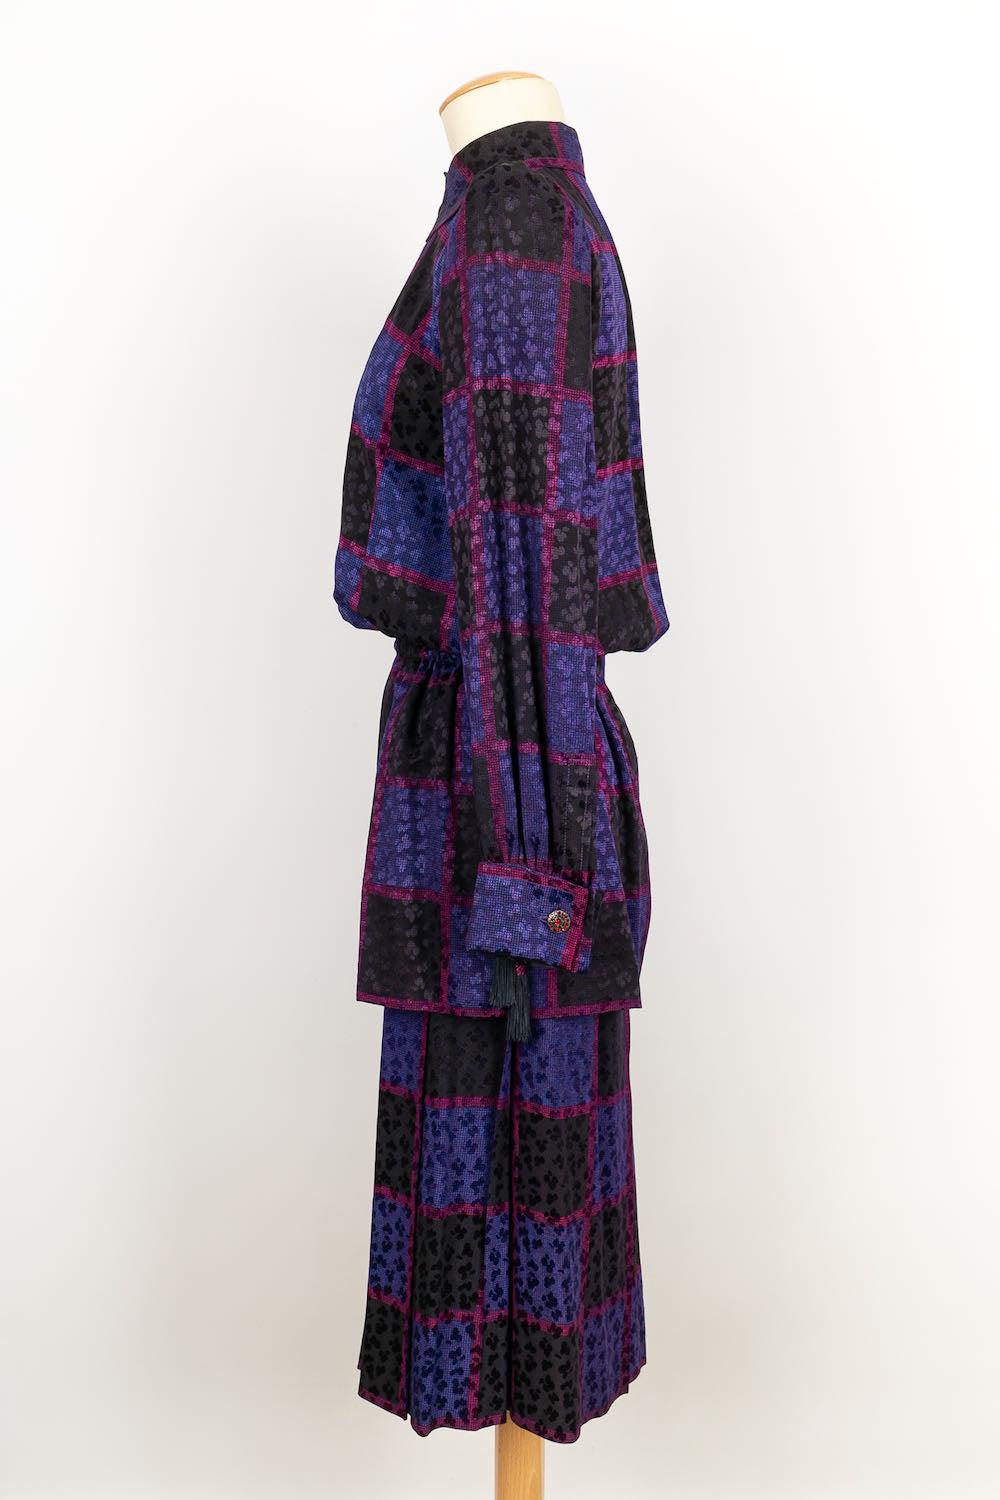 Yves Saint Laurent -(Made in France) Ensemble Haute Couture composé d'une jupe et d'une chemise dans les tons mauves. Aucune taille n'est indiquée, il convient à un 36FR.

Informations complémentaires : 
Dimensions : Chemise : Largeur des épaules :